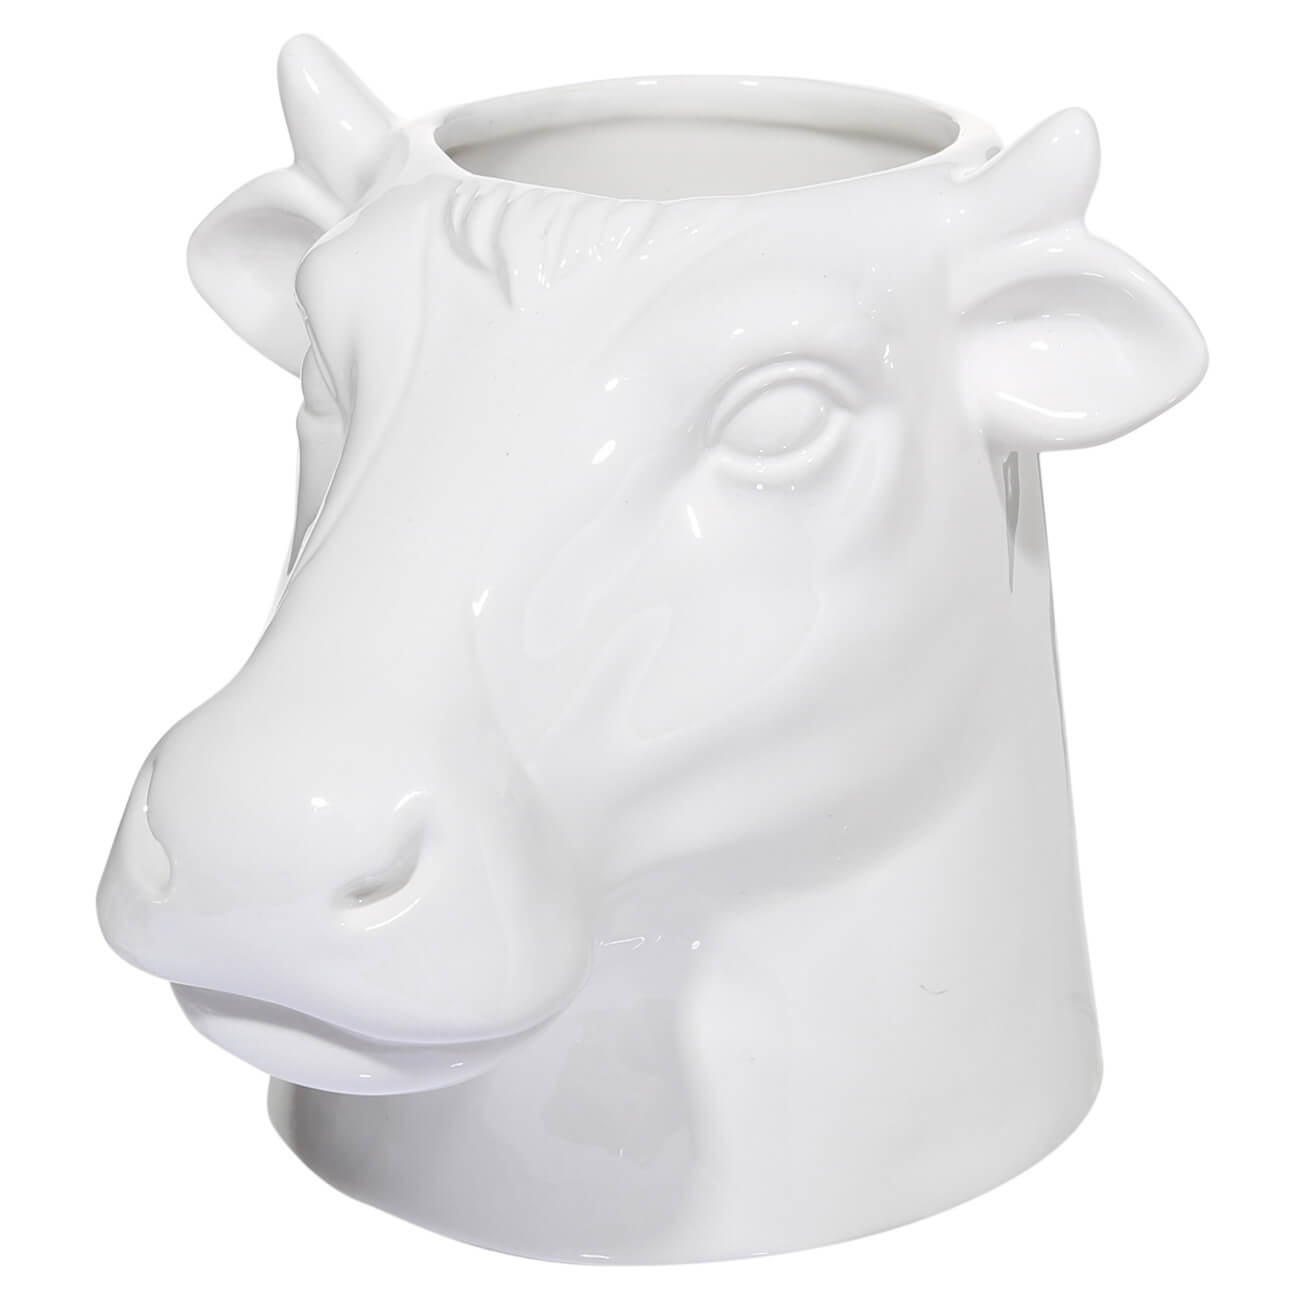 Подставка для кухонных принадлежностей, 15 см, керамика, белая, Корова, Polar bull изображение № 1